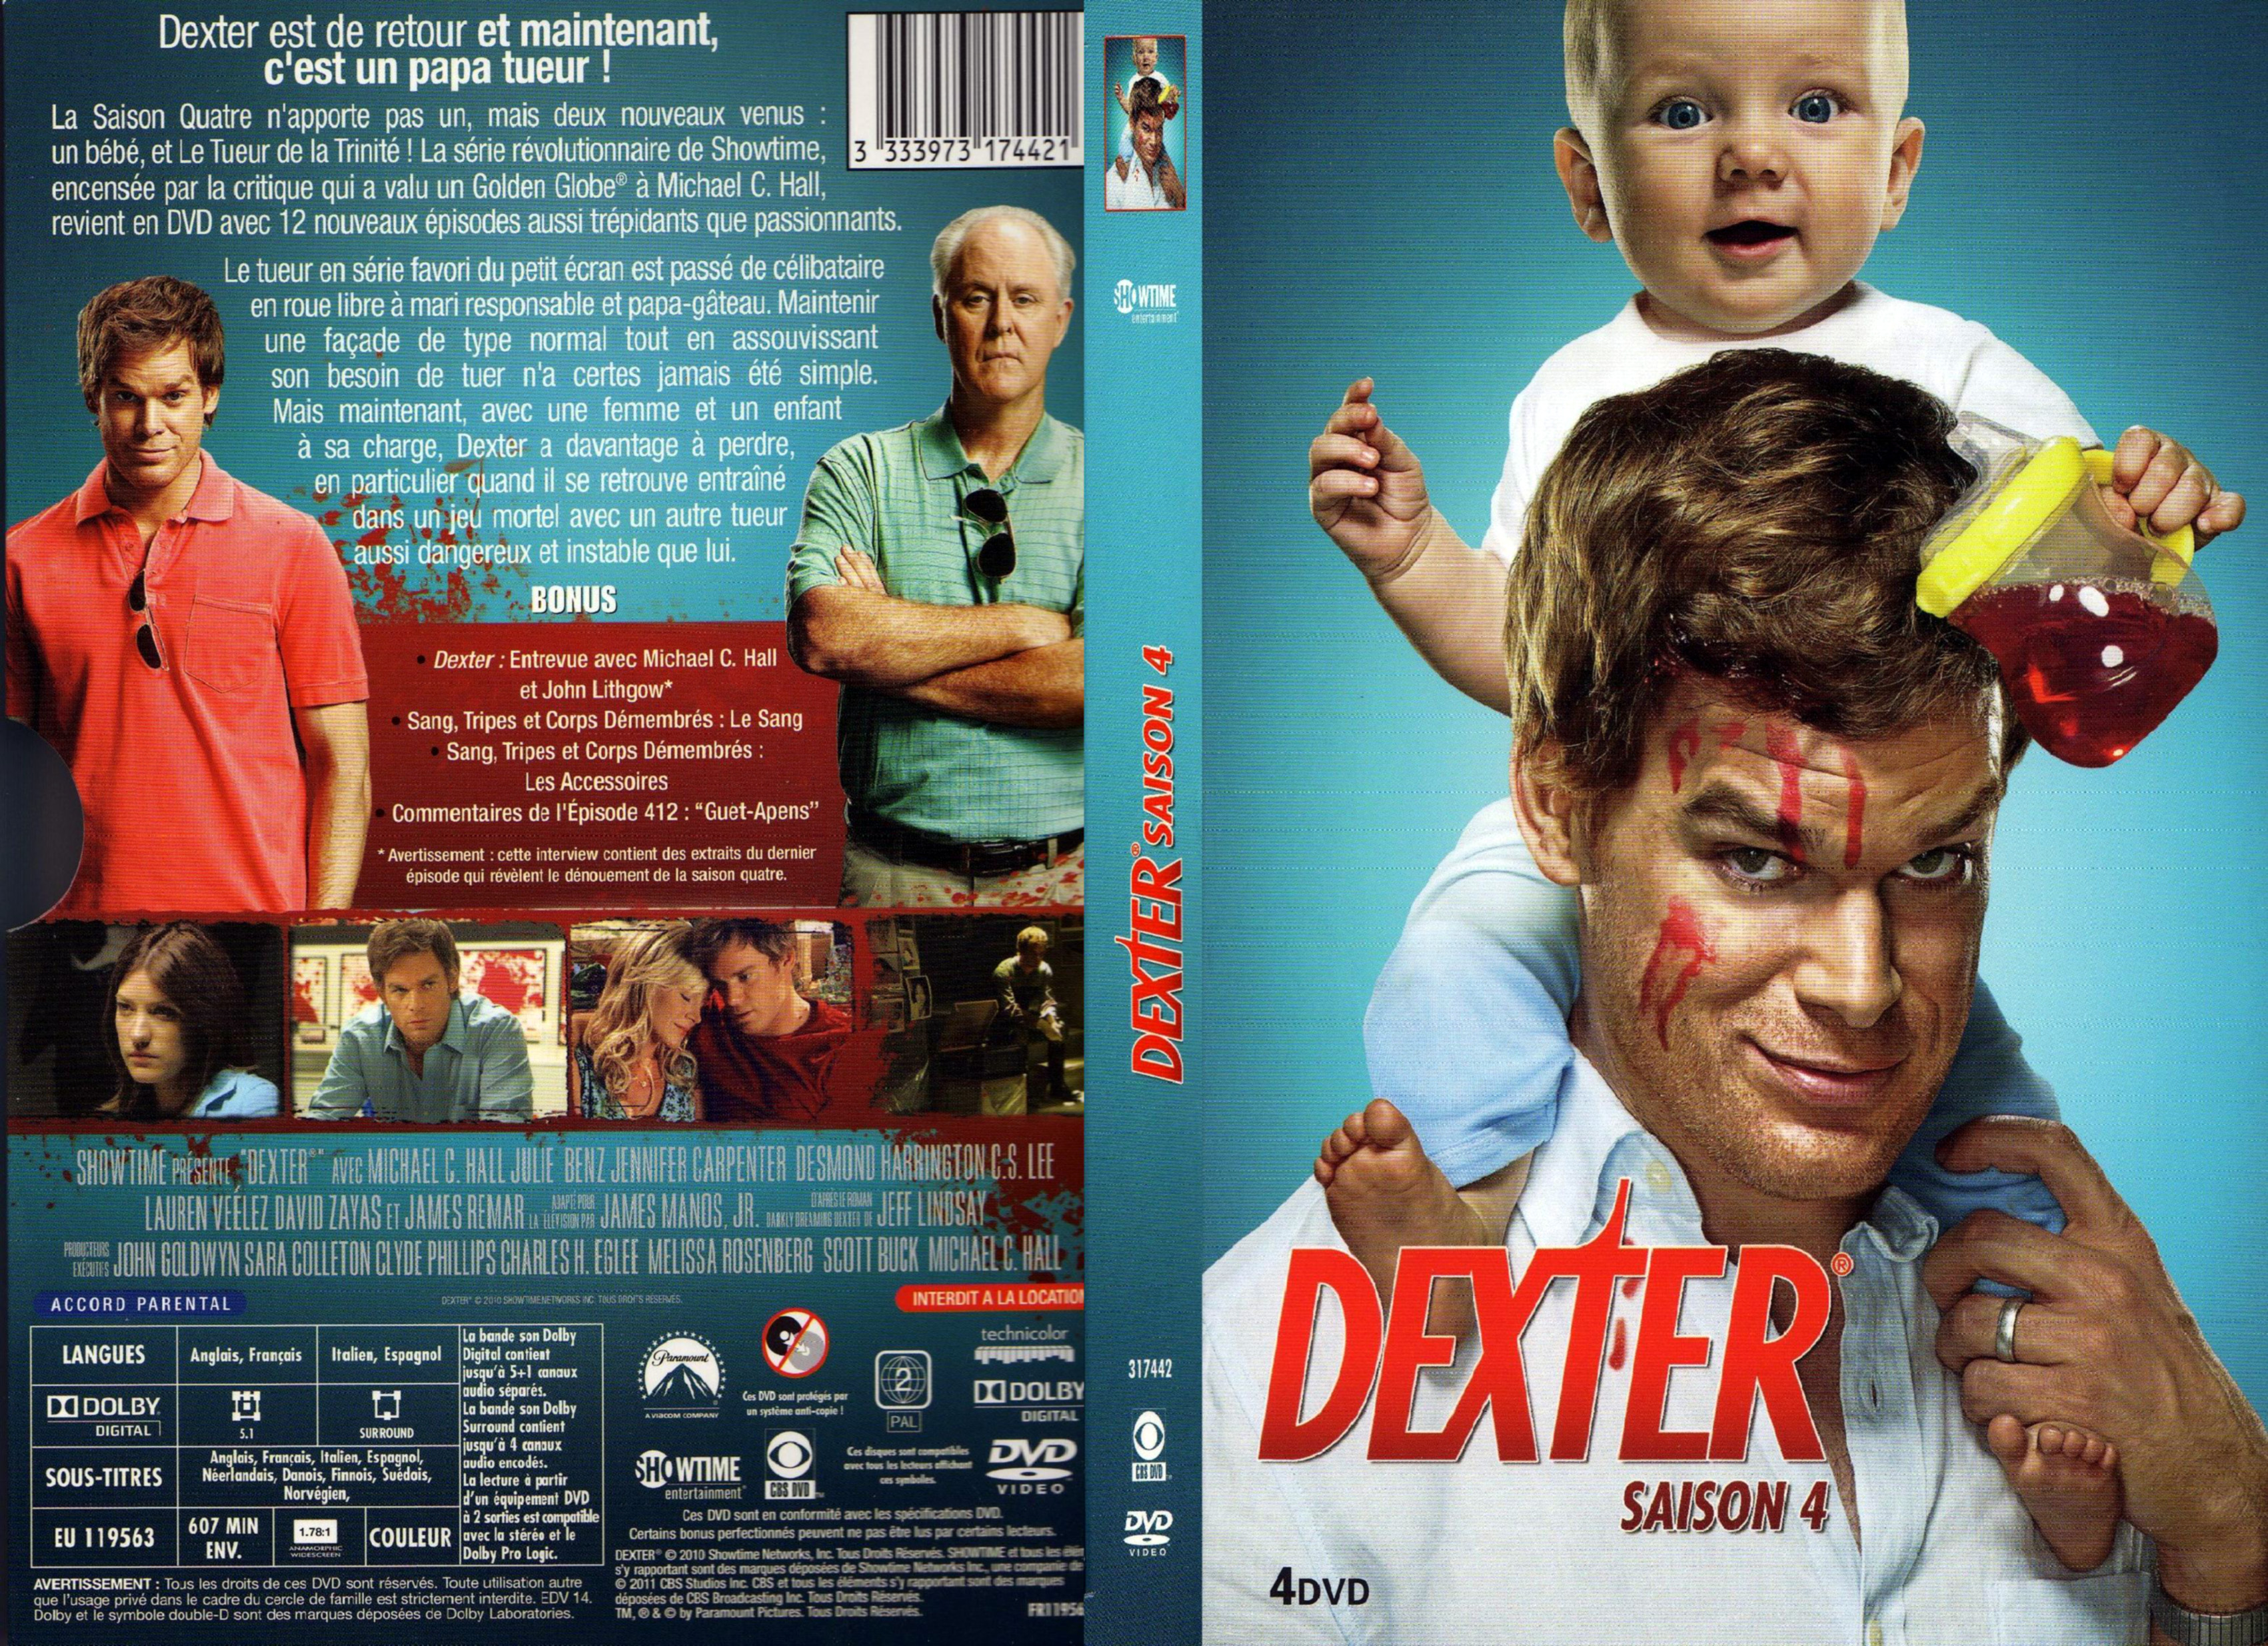 Jaquette DVD Dexter Saison 4